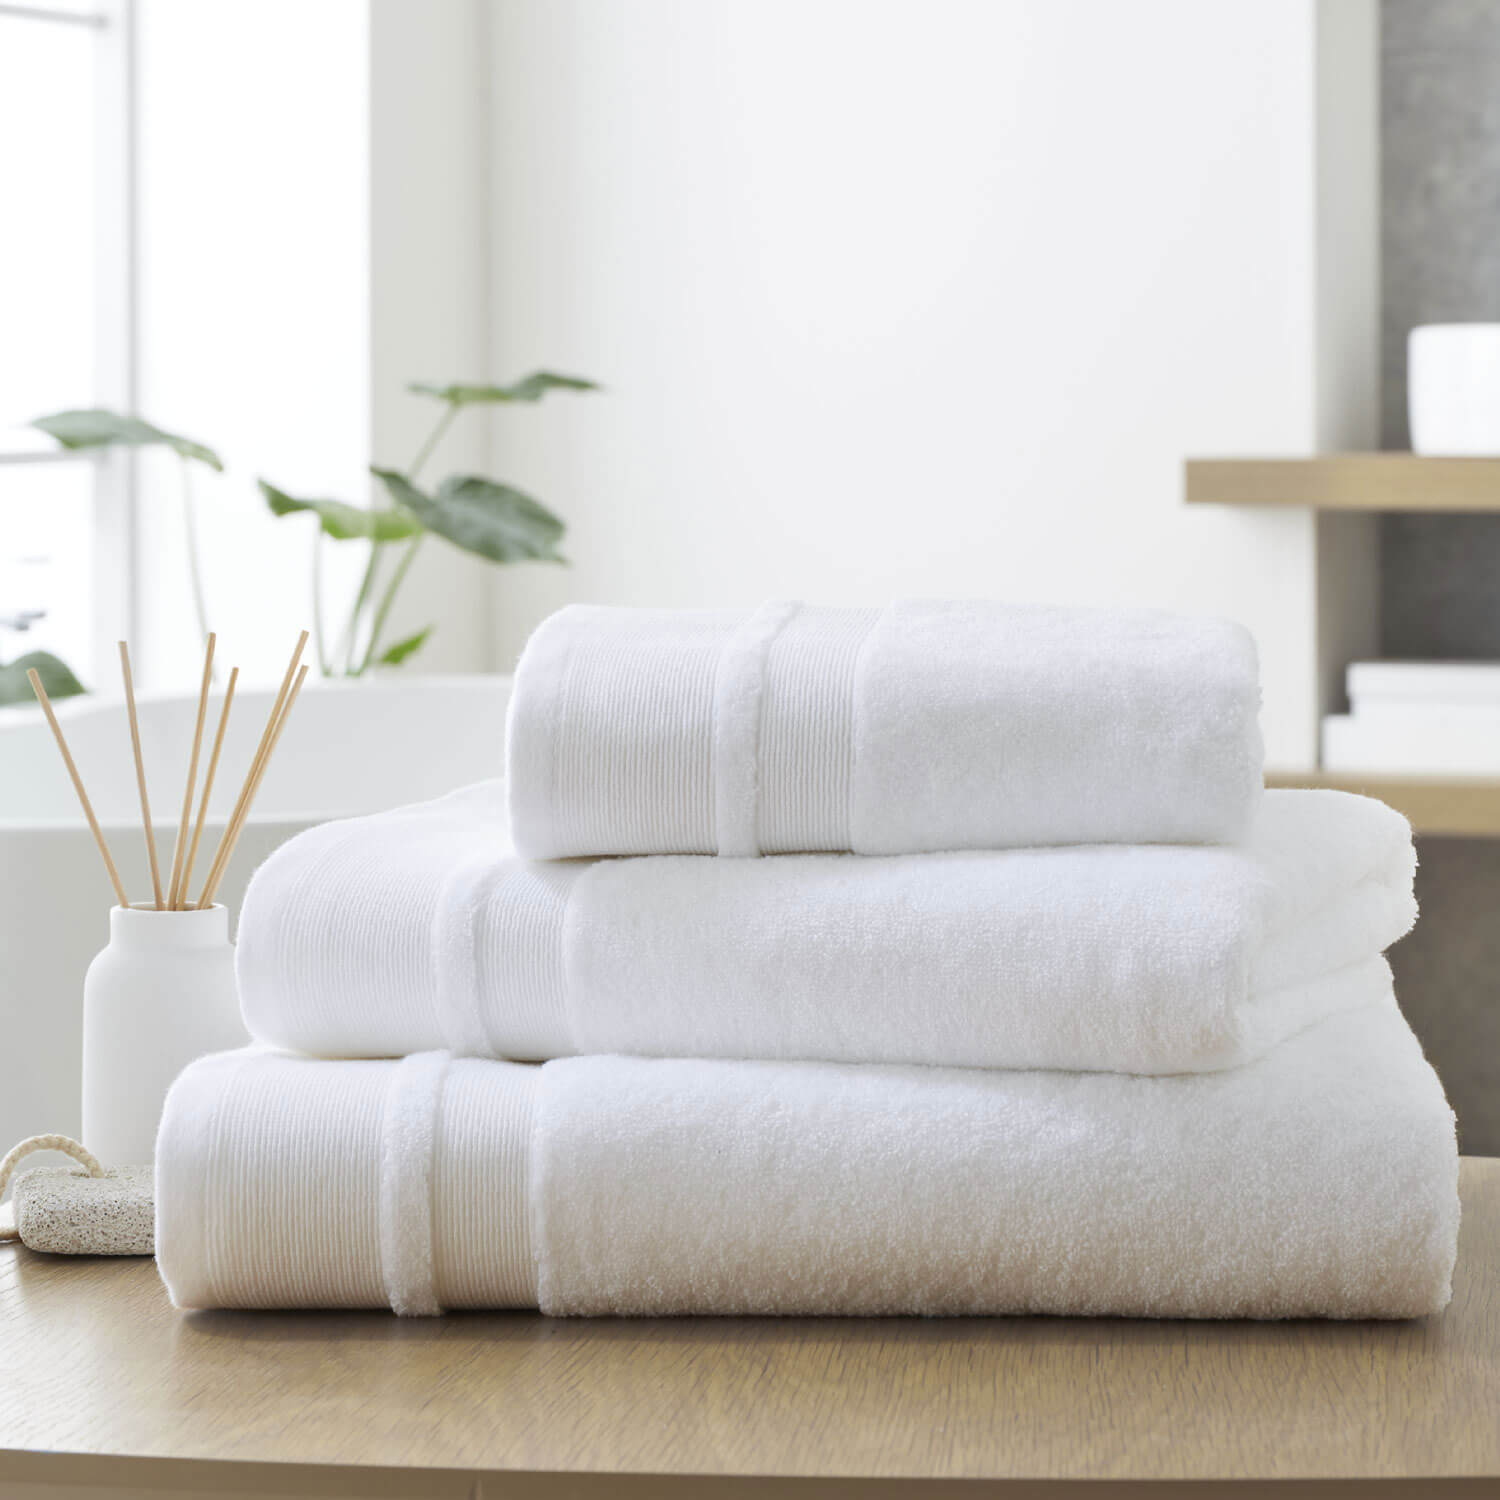 Dorma Zero Twist Cotton Modal Towel - White 1 Shaws Department Stores